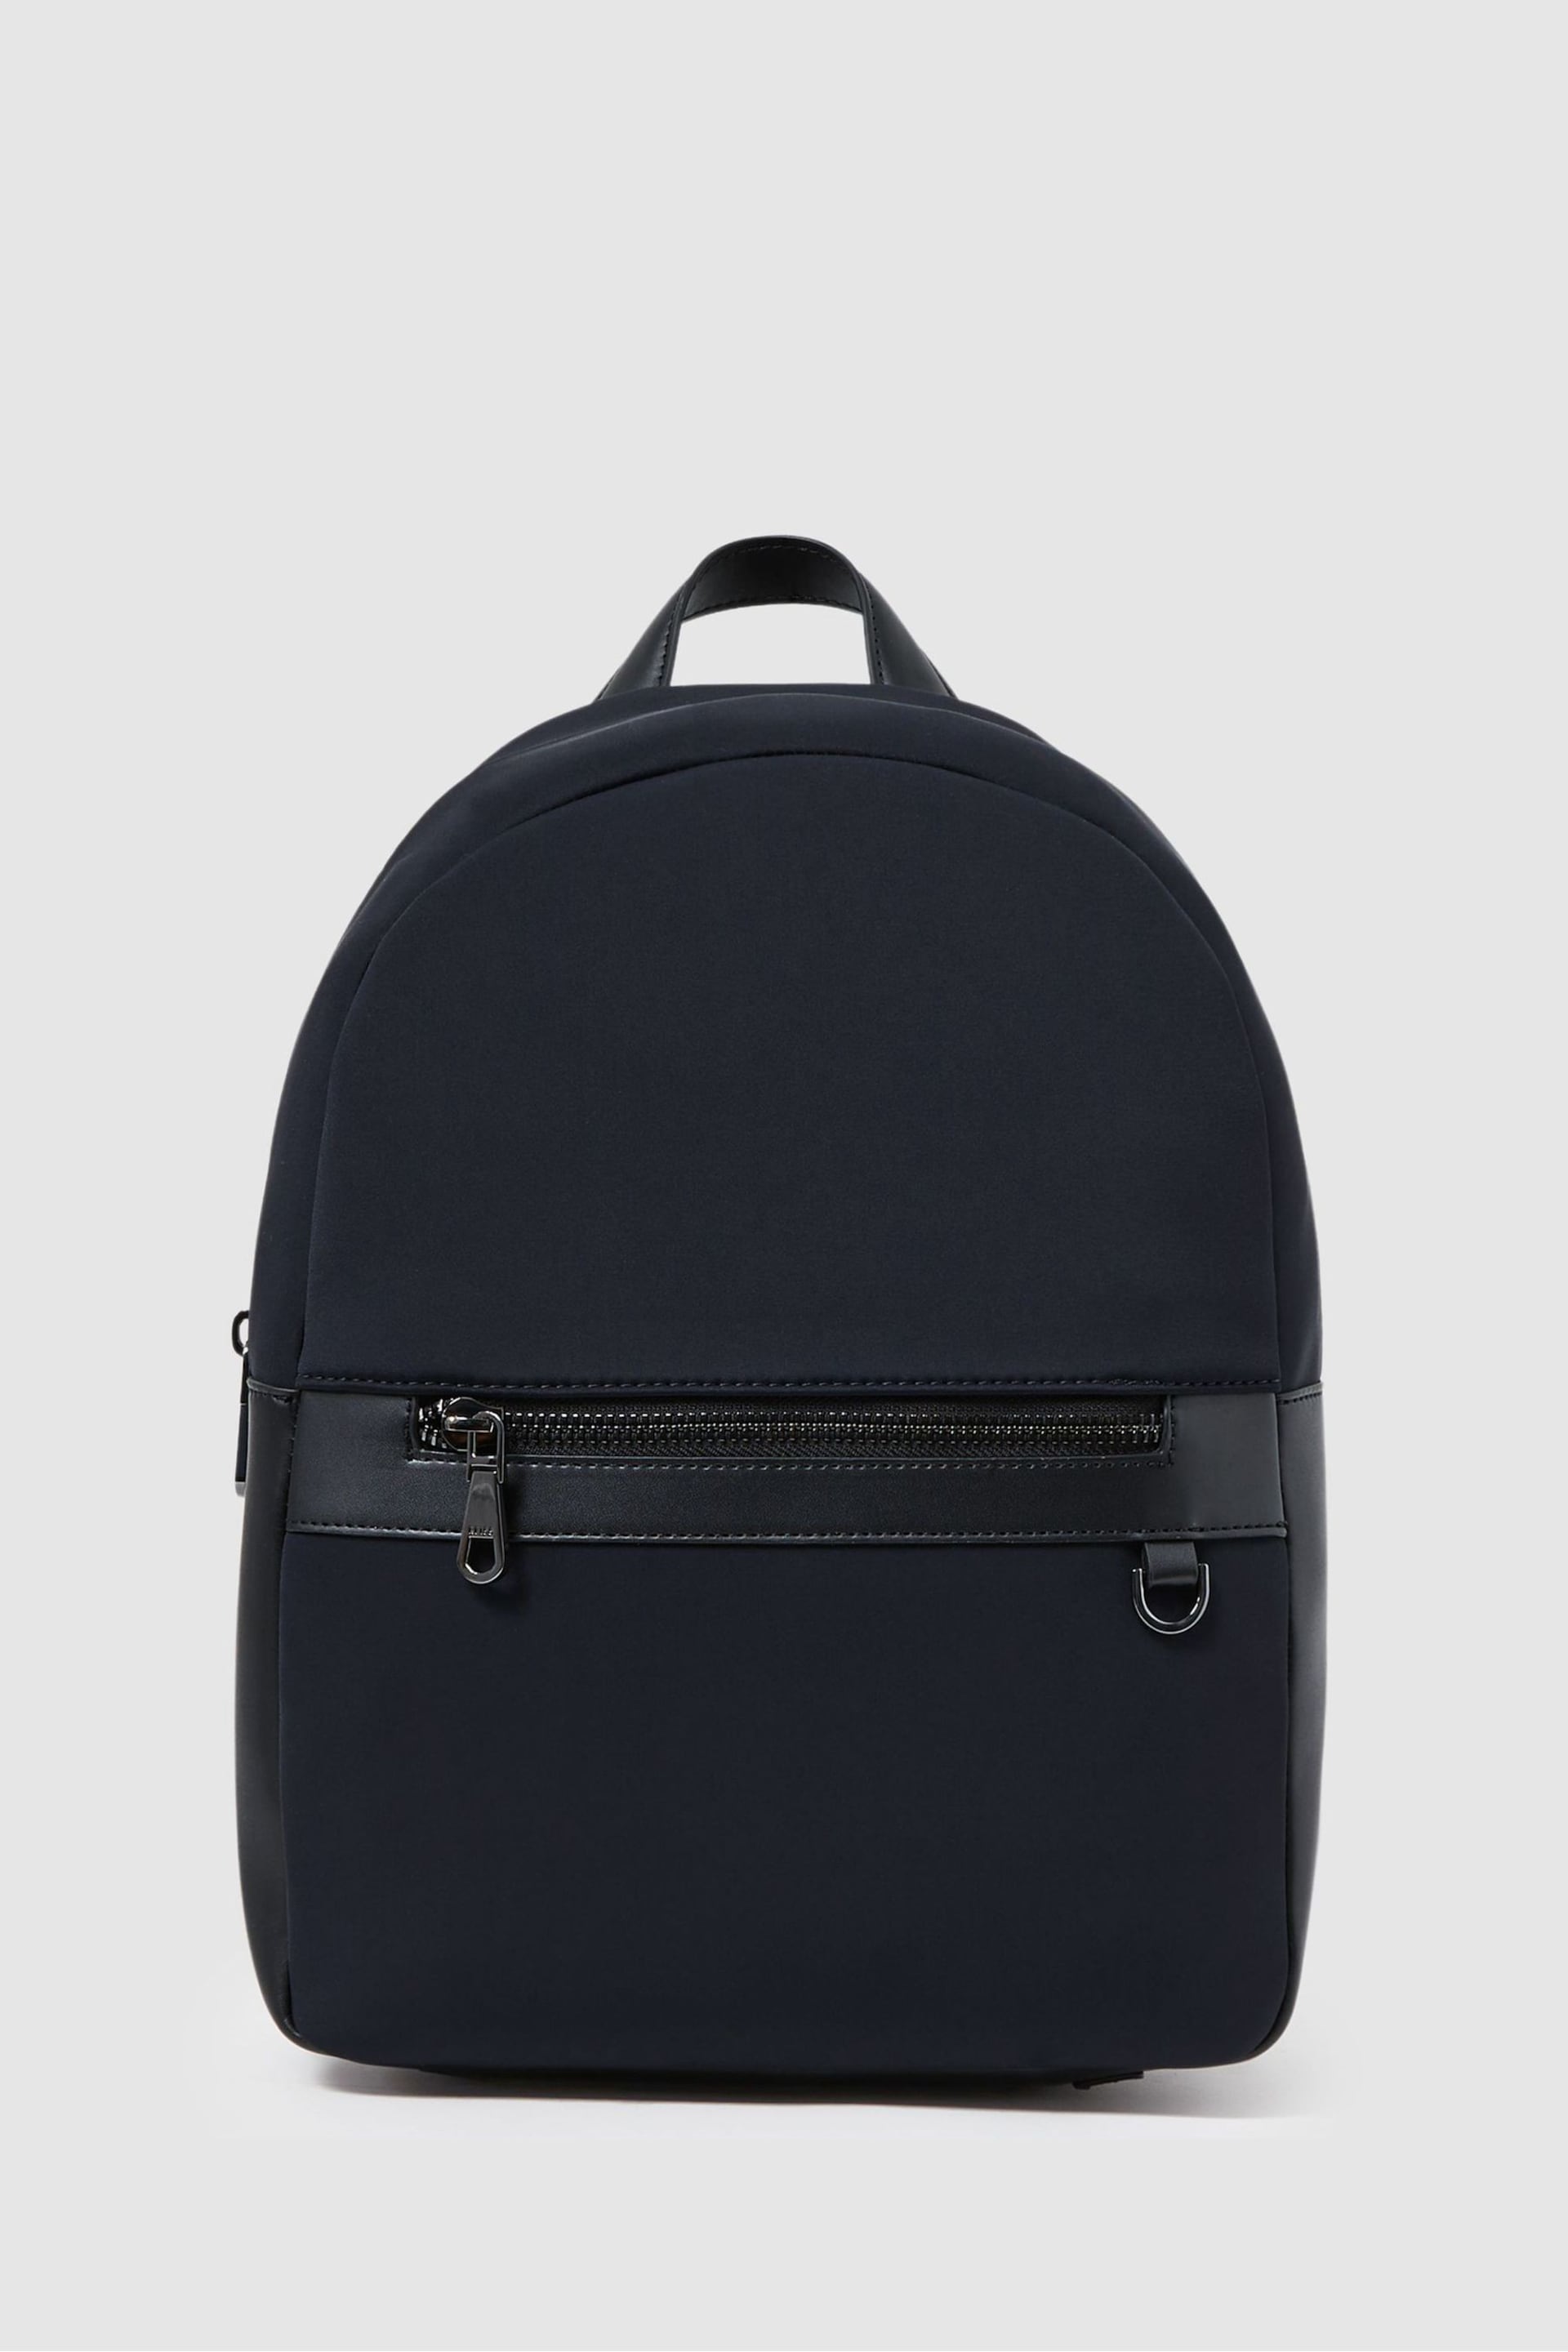 Reiss Dark Navy Drew Neoprene Zipped Backpack - Image 1 of 5